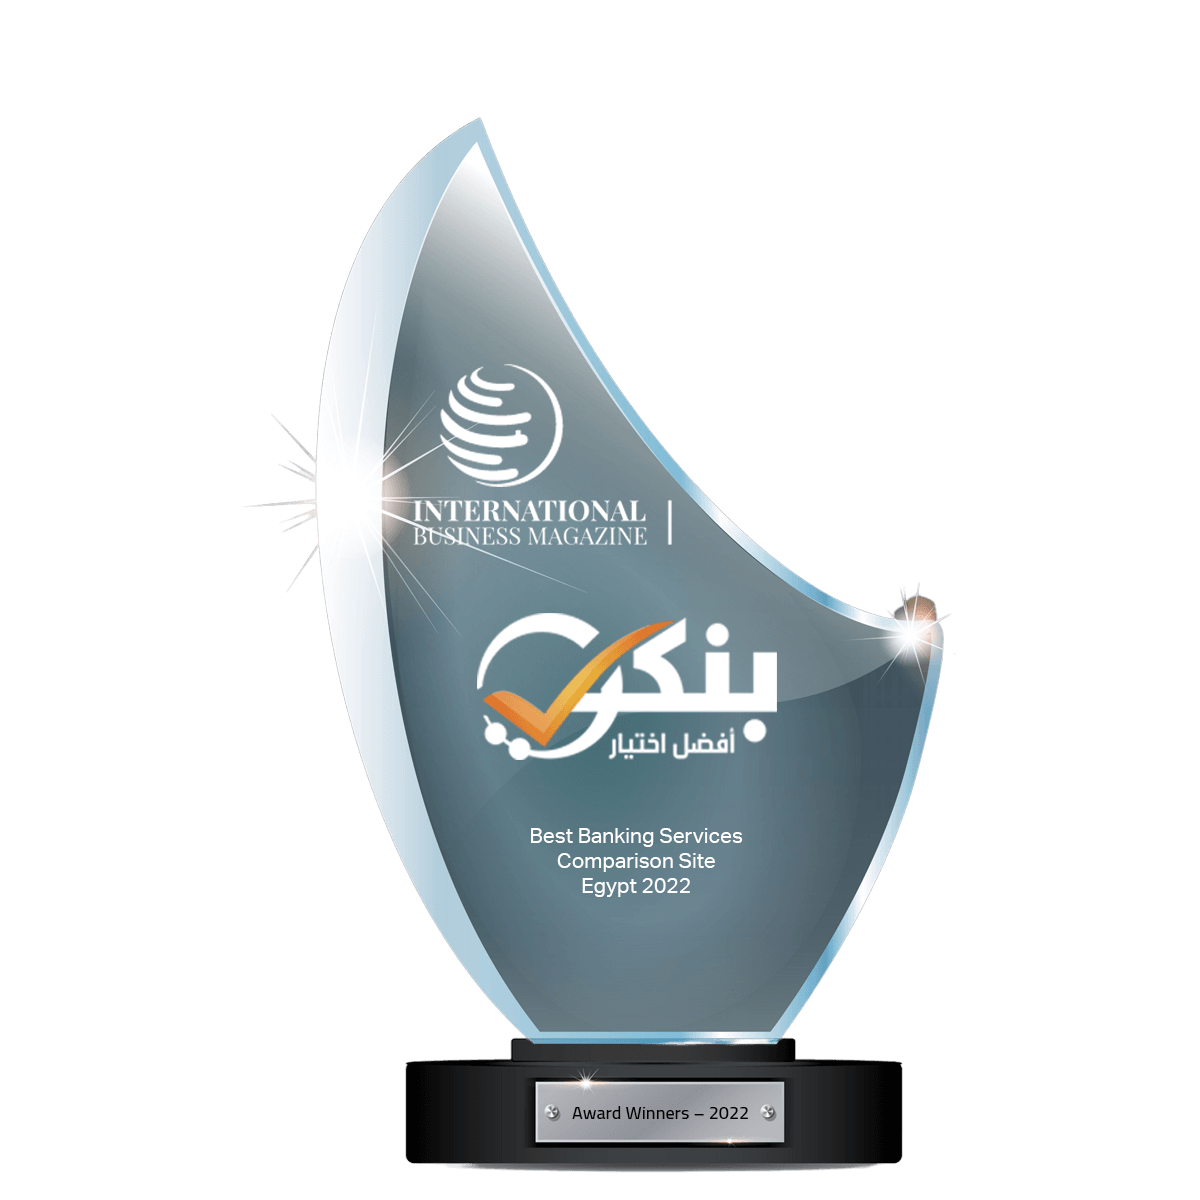 بنكي | «بنكي» يحصد جائزة أفضل موقع لمقارنة الخدمات المصرفية في مصر لعام 2022 من مجلة International Business